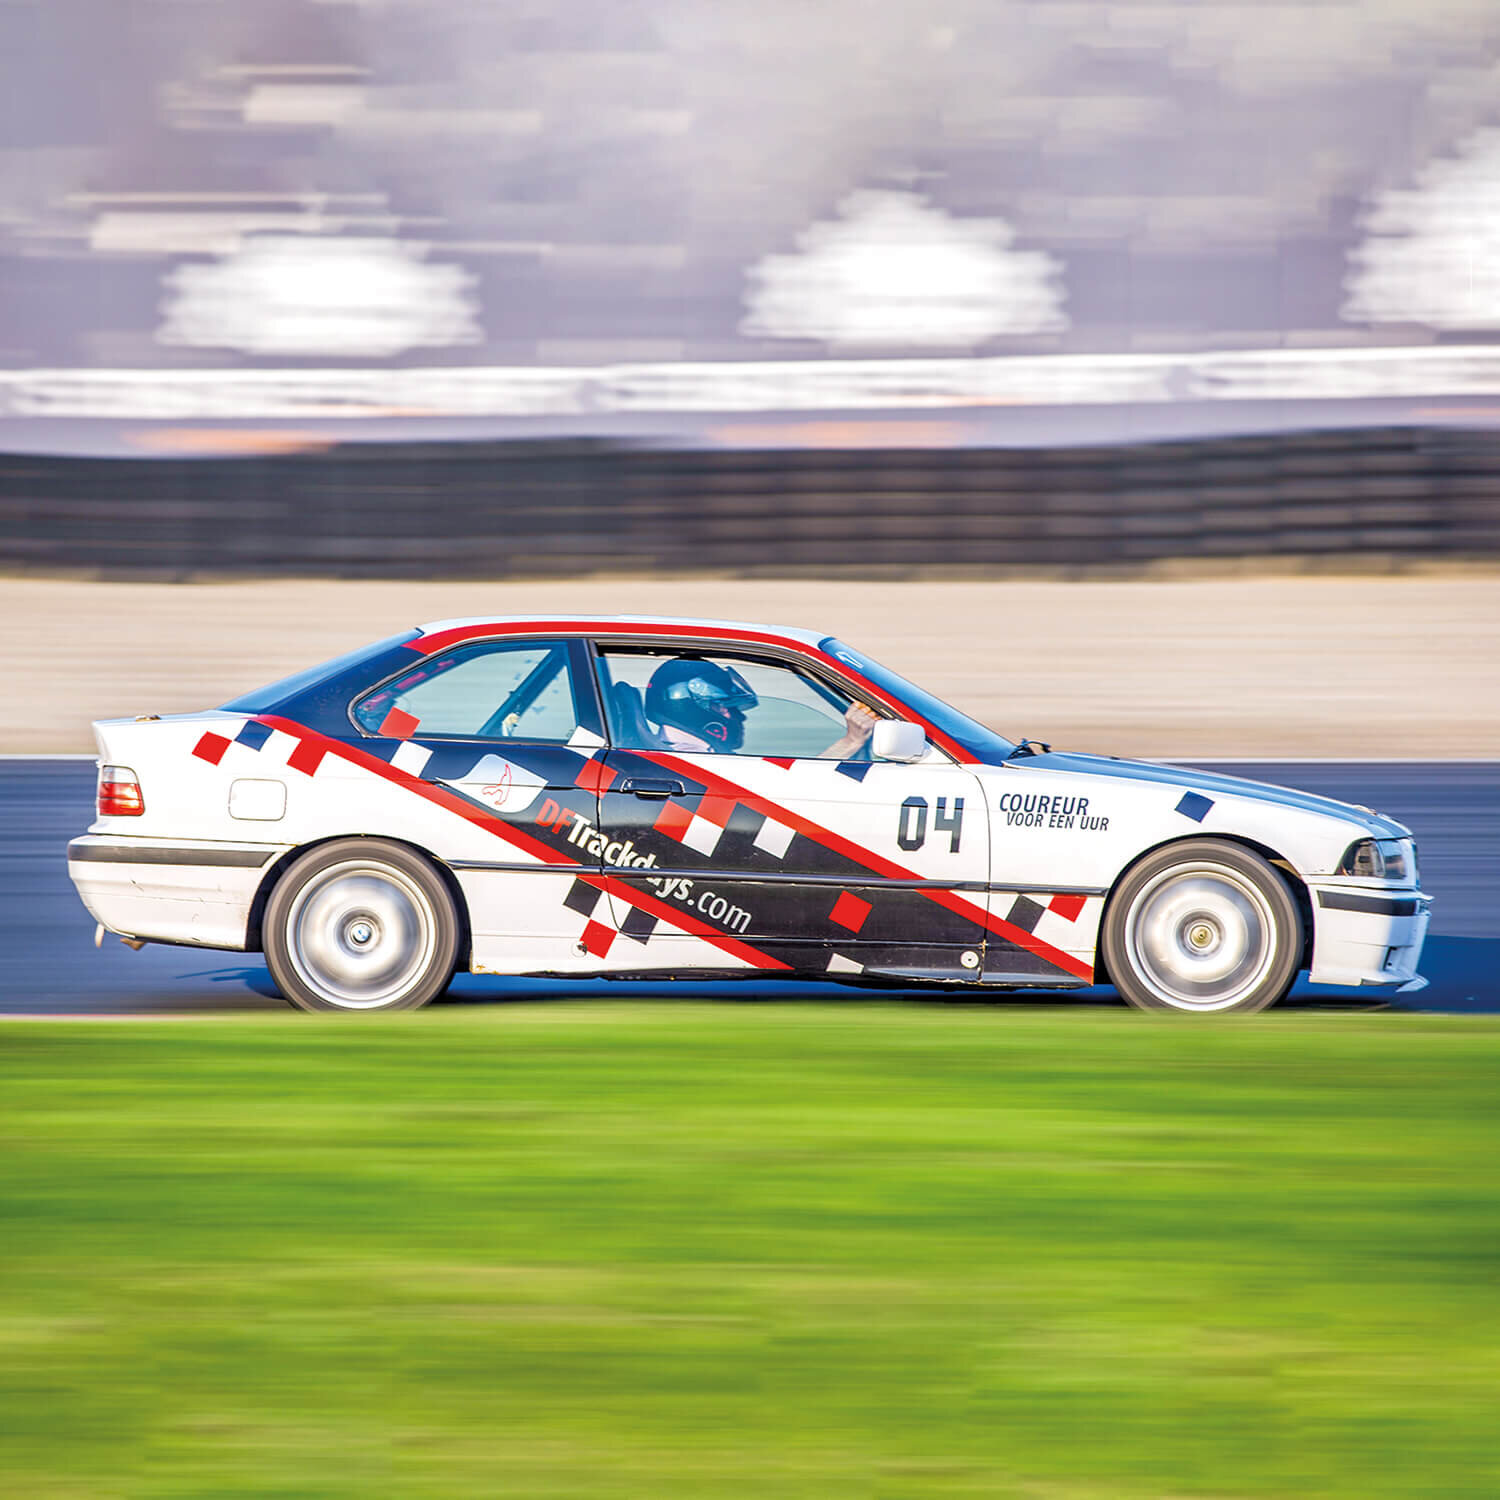 Circuitdag en 3 rondes meerijden in een BMW 325i bij Driving-Fun Spa-Francorchamps